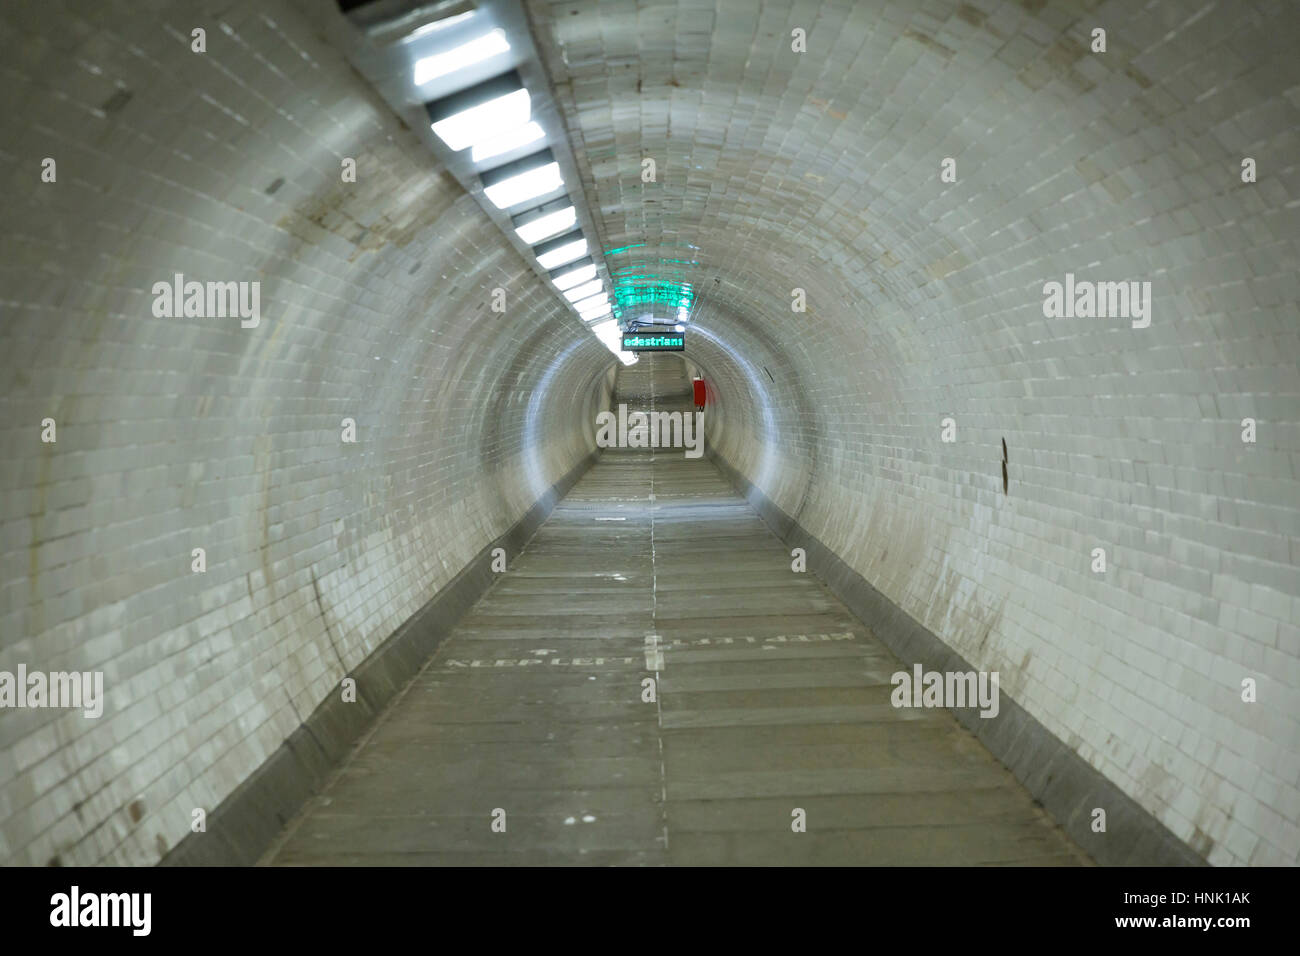 Greenwich Foot Tunnel, Greenwich. Jan, 2017. London, UK Stock Photo